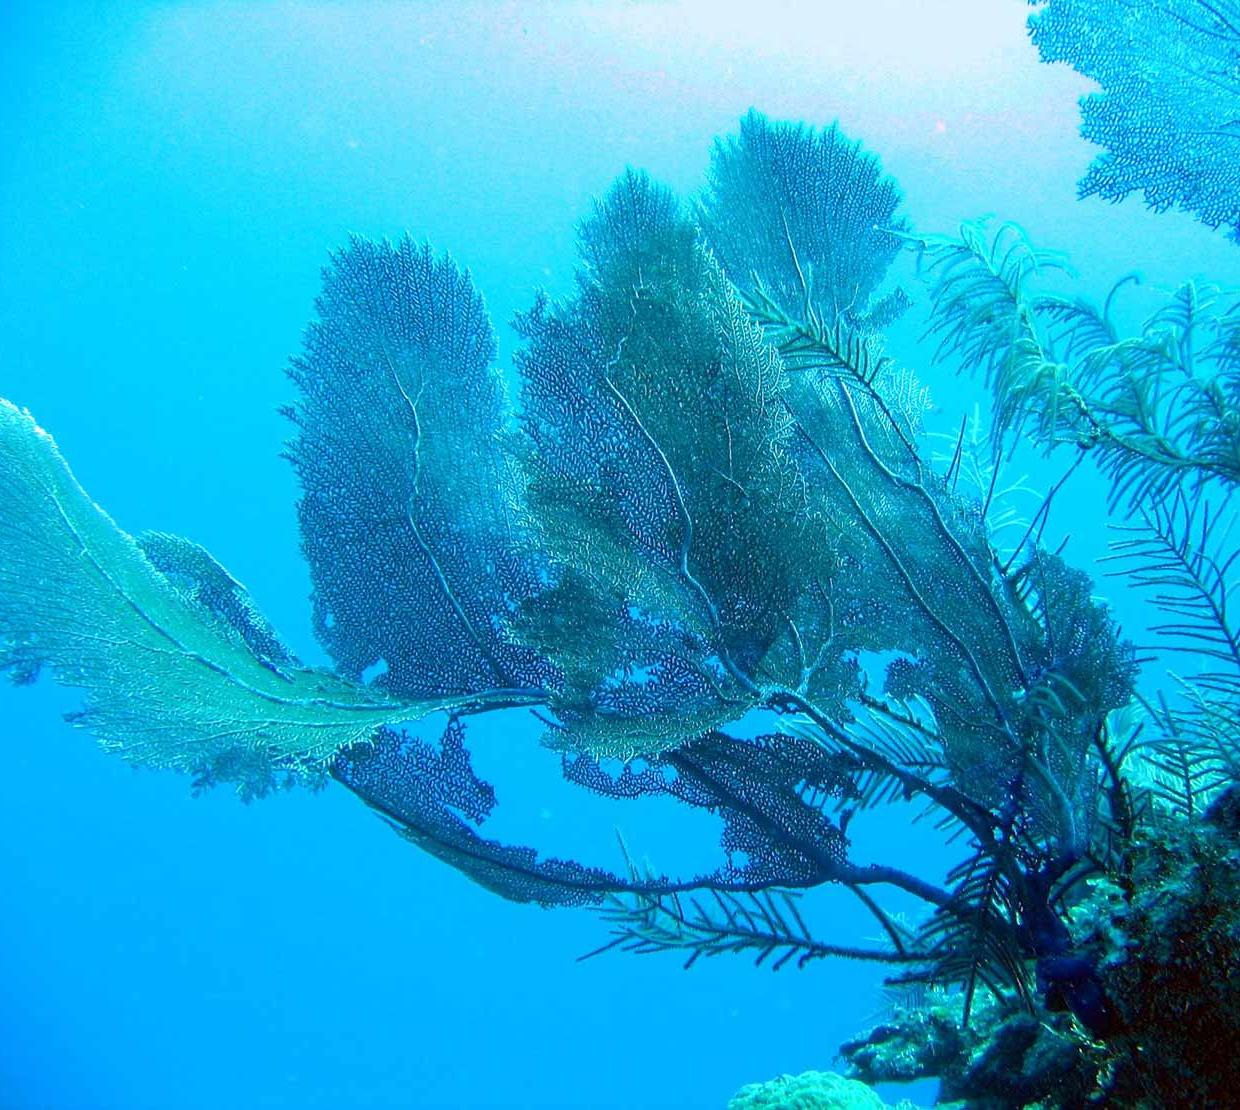 Coral reef sitting on rocks in ocean floor